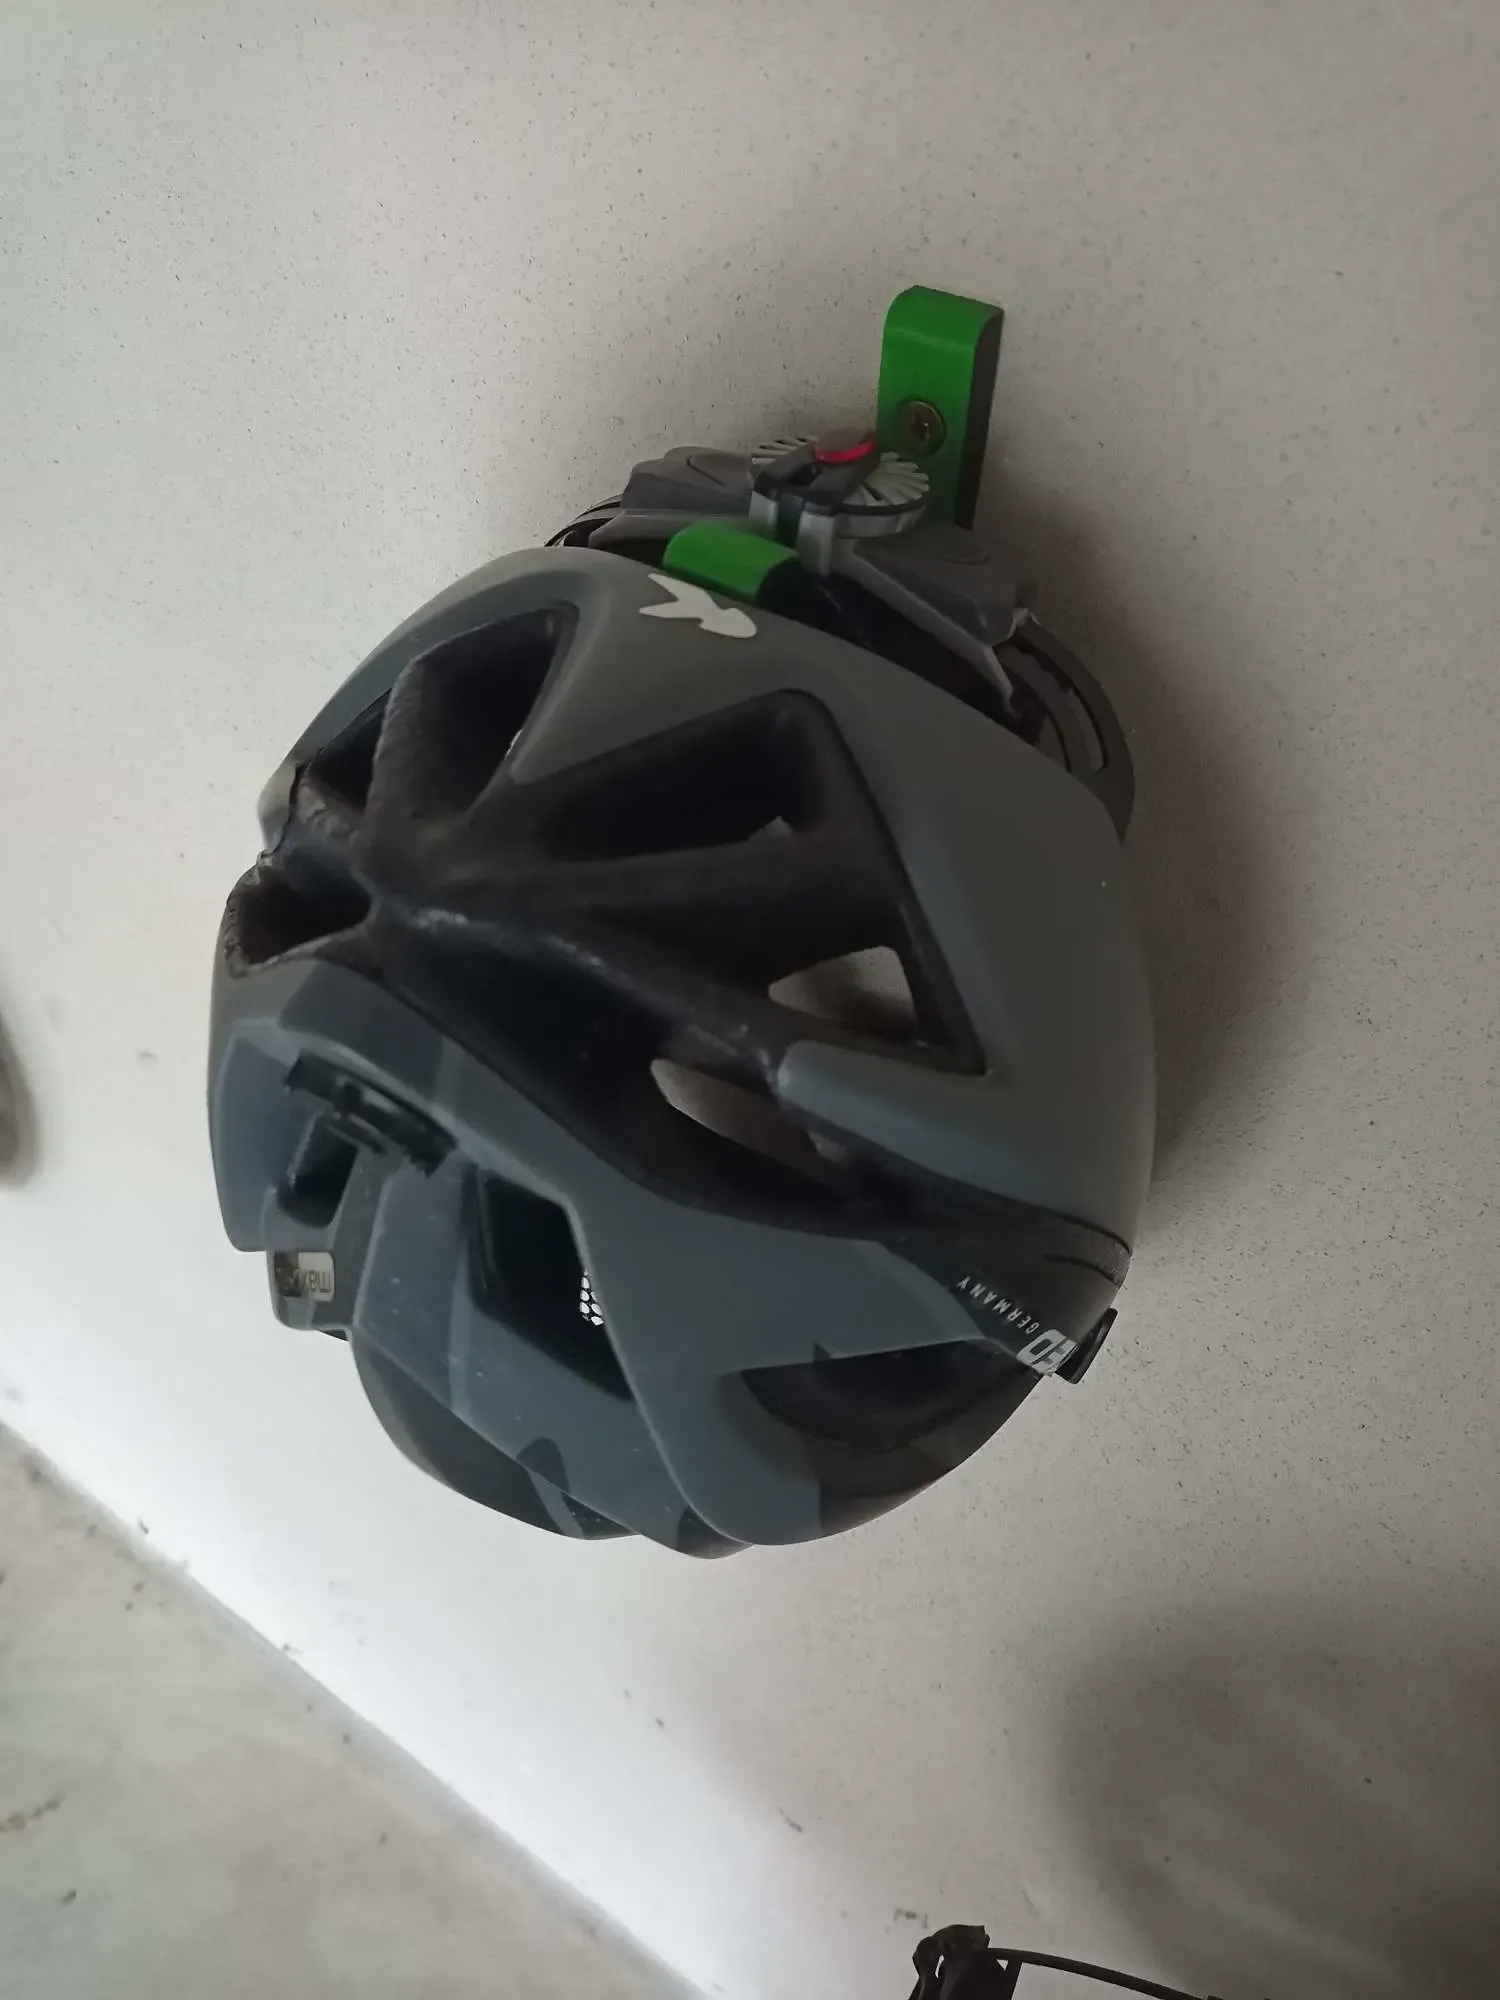 bike helmet holder